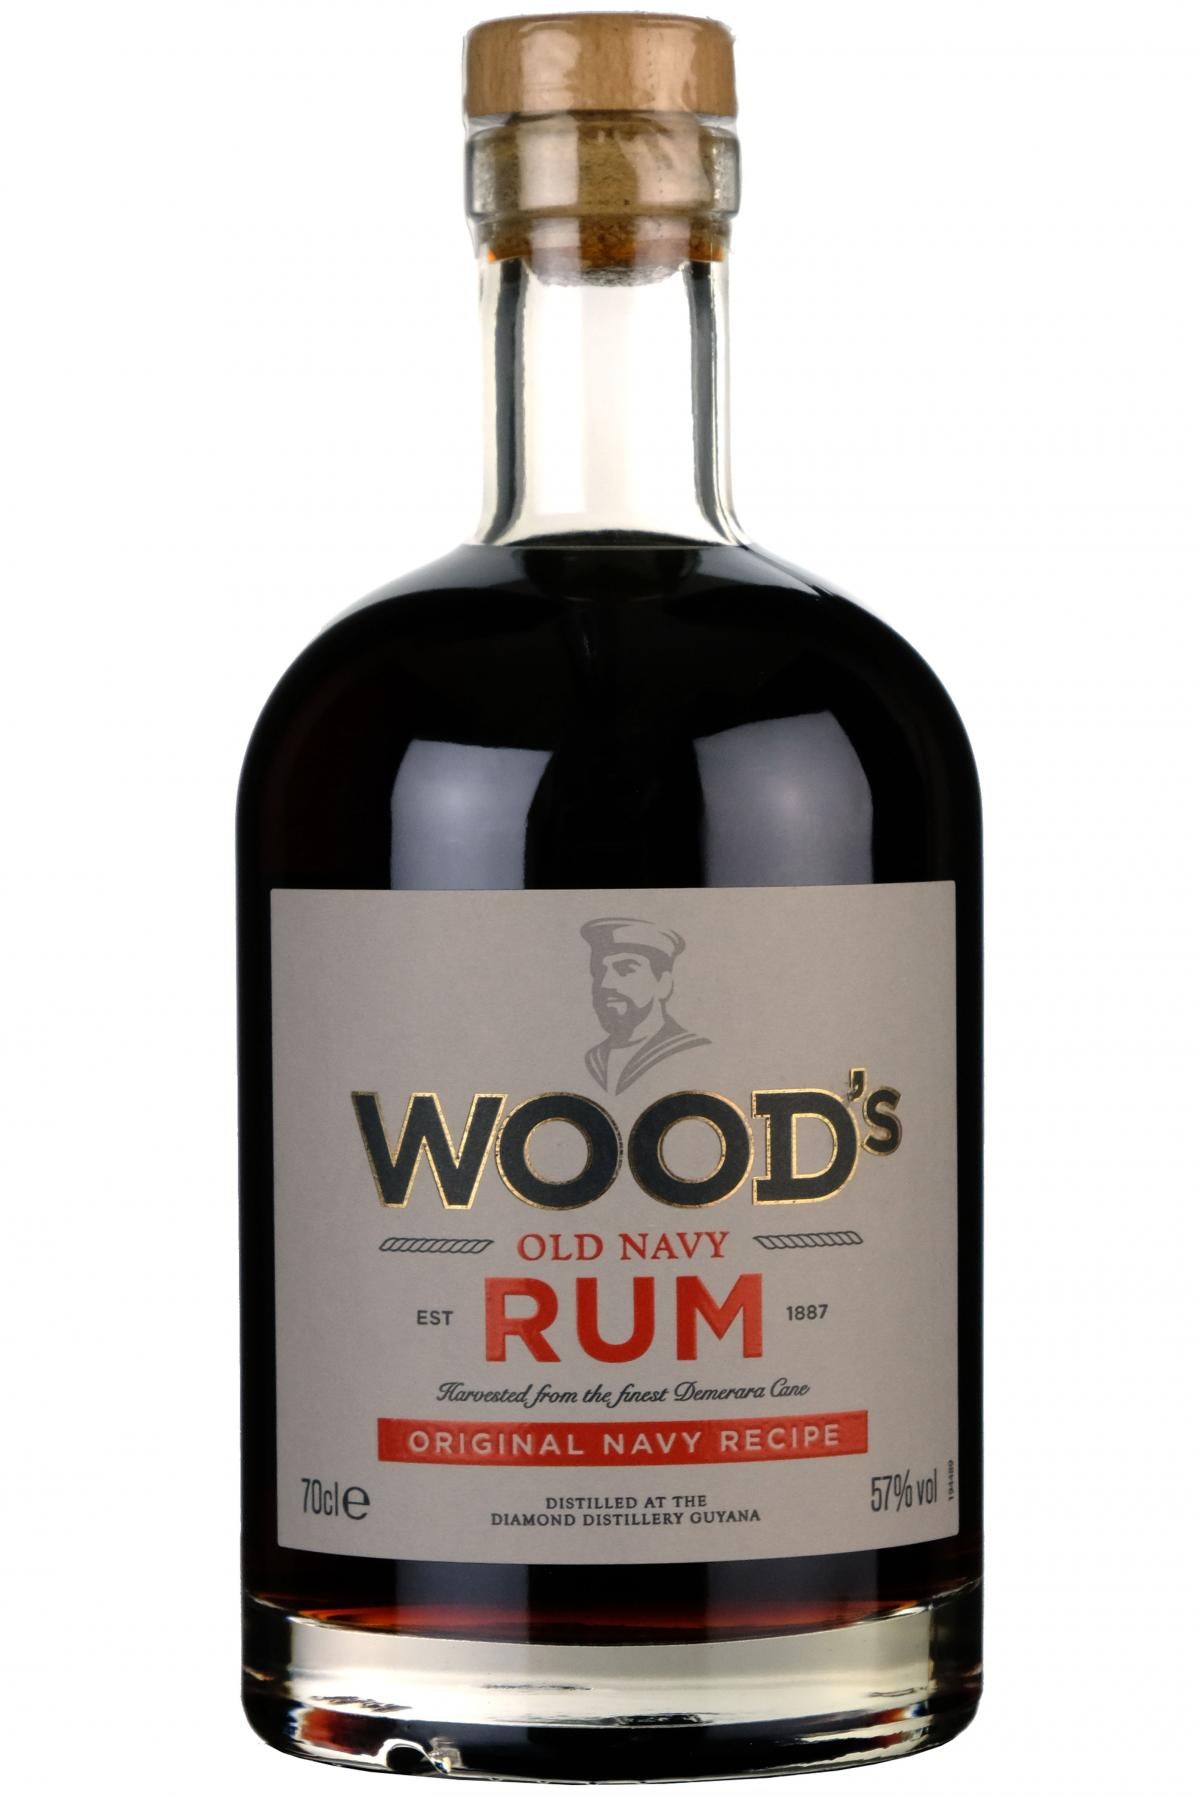 Woods Old Navy Rum Original Navy Recipe